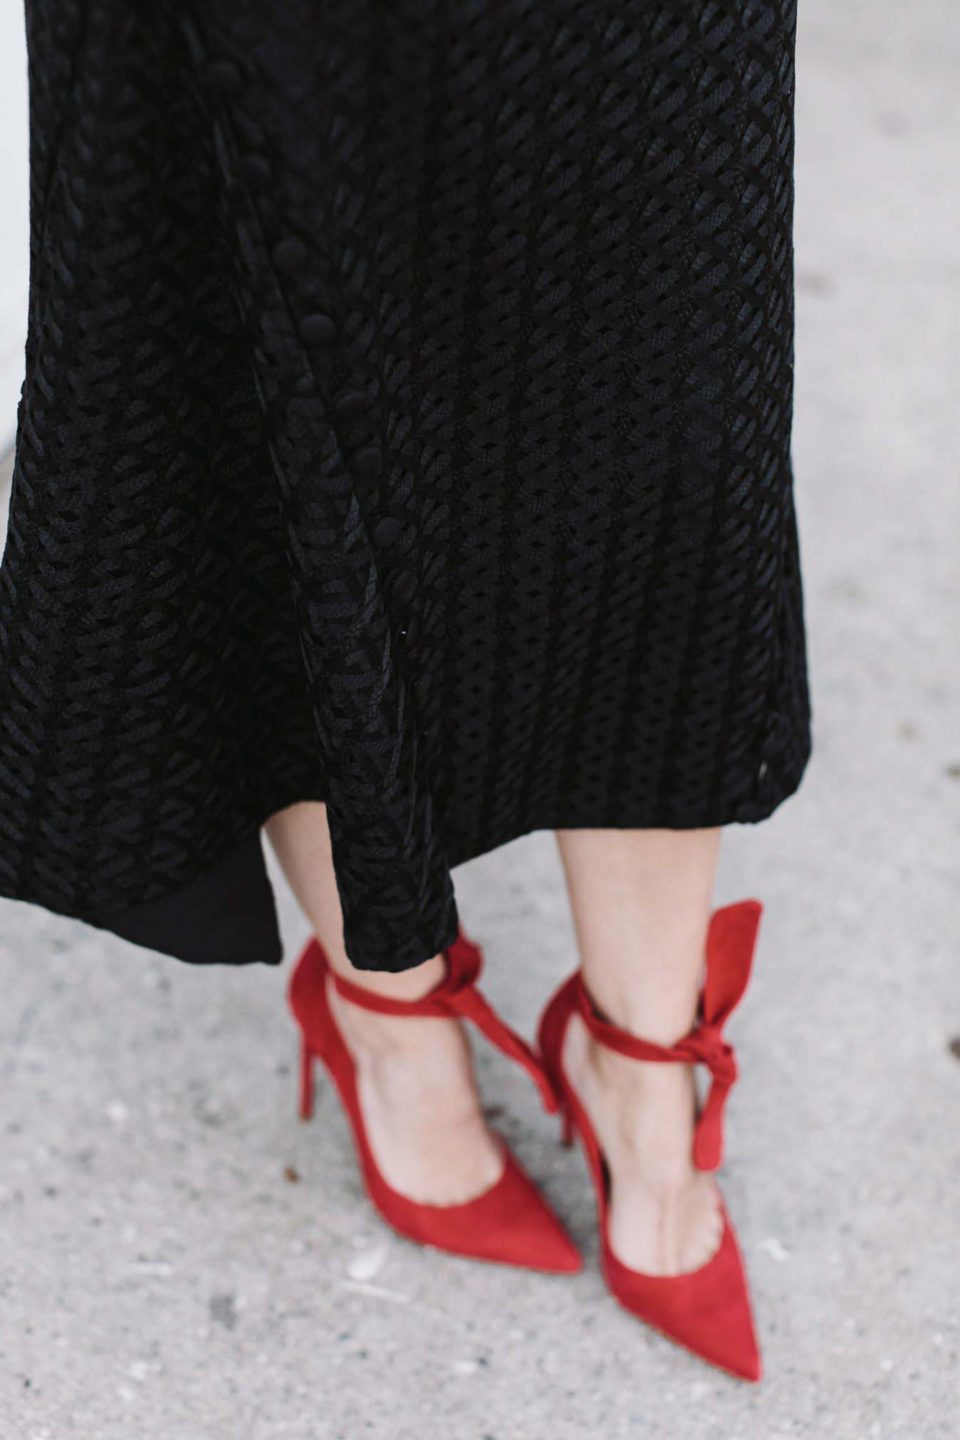 All black outfit. Черный топ с рукавами клеш, черная юбка миди, красные туфли. 